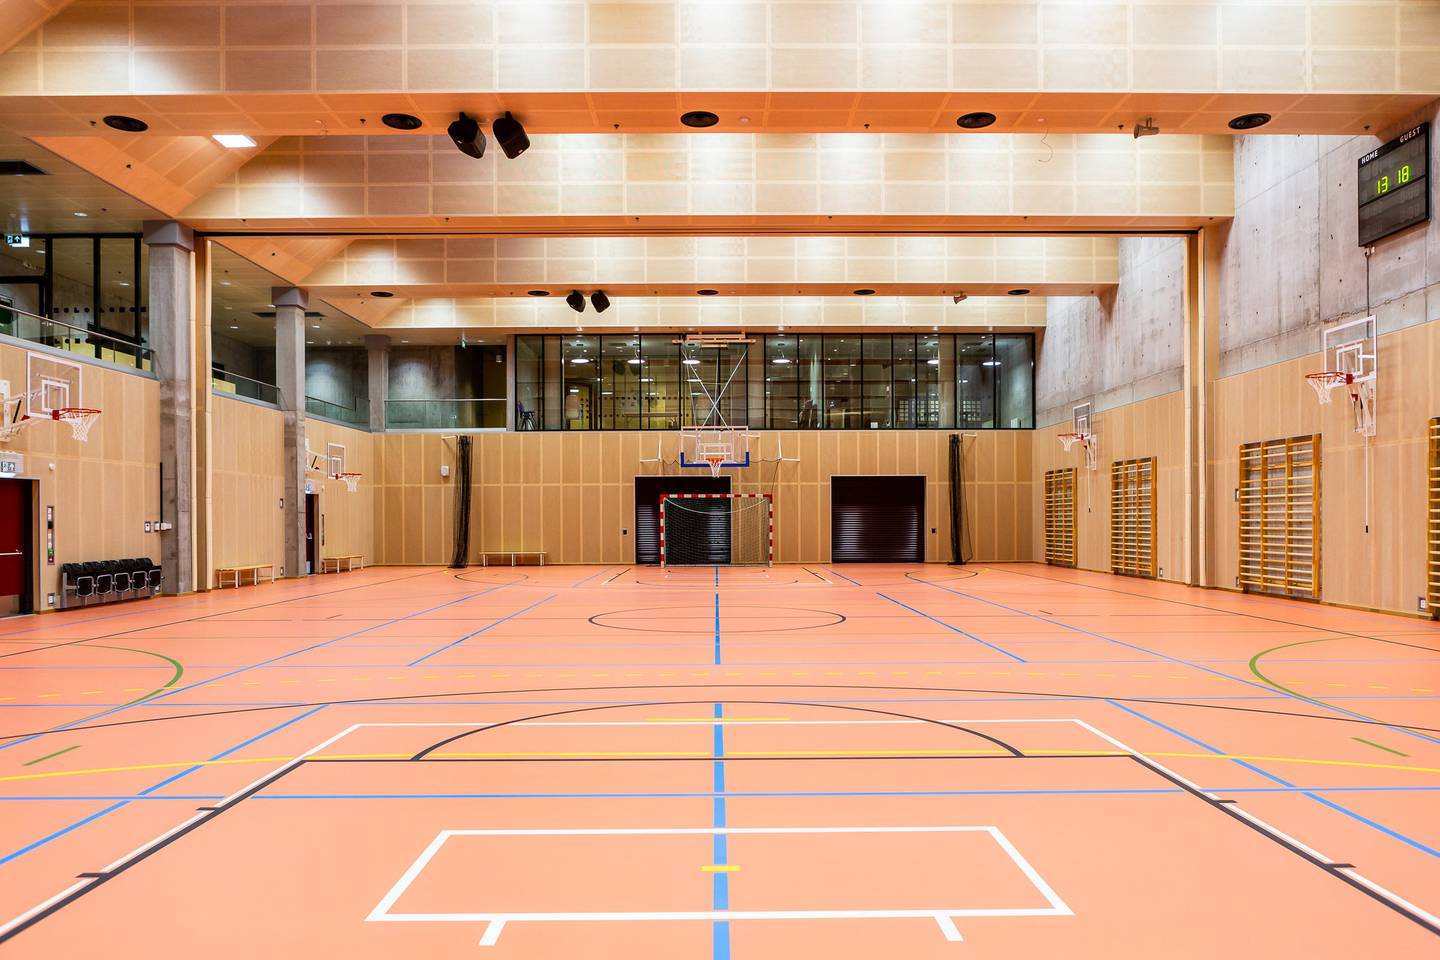 Majorstuen flerbrukshall har en spilleflate tilsvarende en basketballbane, og kan deles i tre parallelle gymsaler ved behov. I tillegg har hallen et aktivitetsrom på rundt 80 kvadratmeter, møte- og klubbrom på rundt 40 kvadratmeter, samt en tribune med plass til rundt 130 personer.